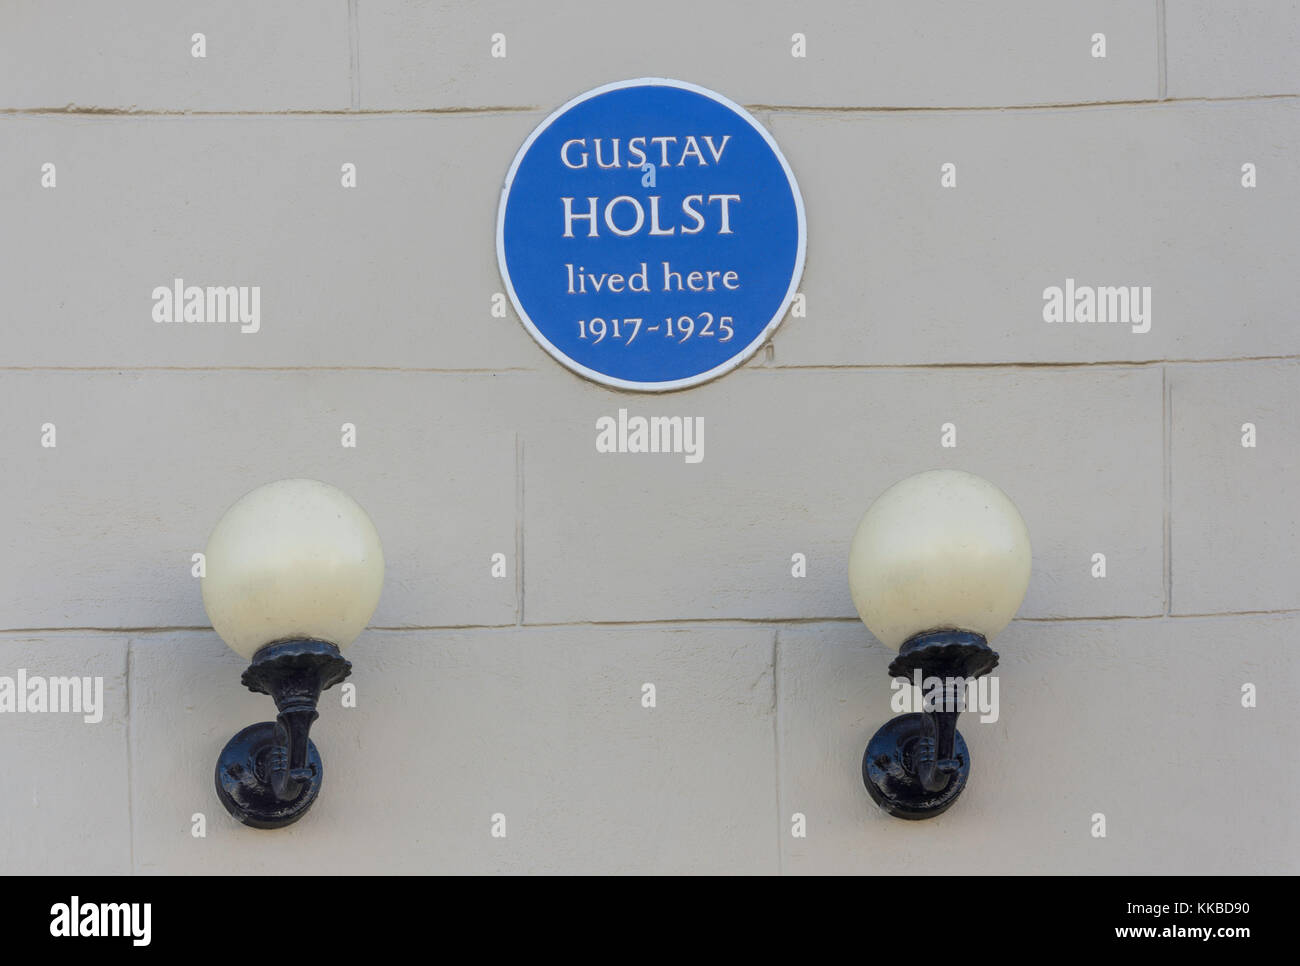 Blue plaque sur l'ancienne maison du compositeur Gustav Holst, ville, rue Thaxted, Essex, Angleterre, Royaume-Uni Banque D'Images